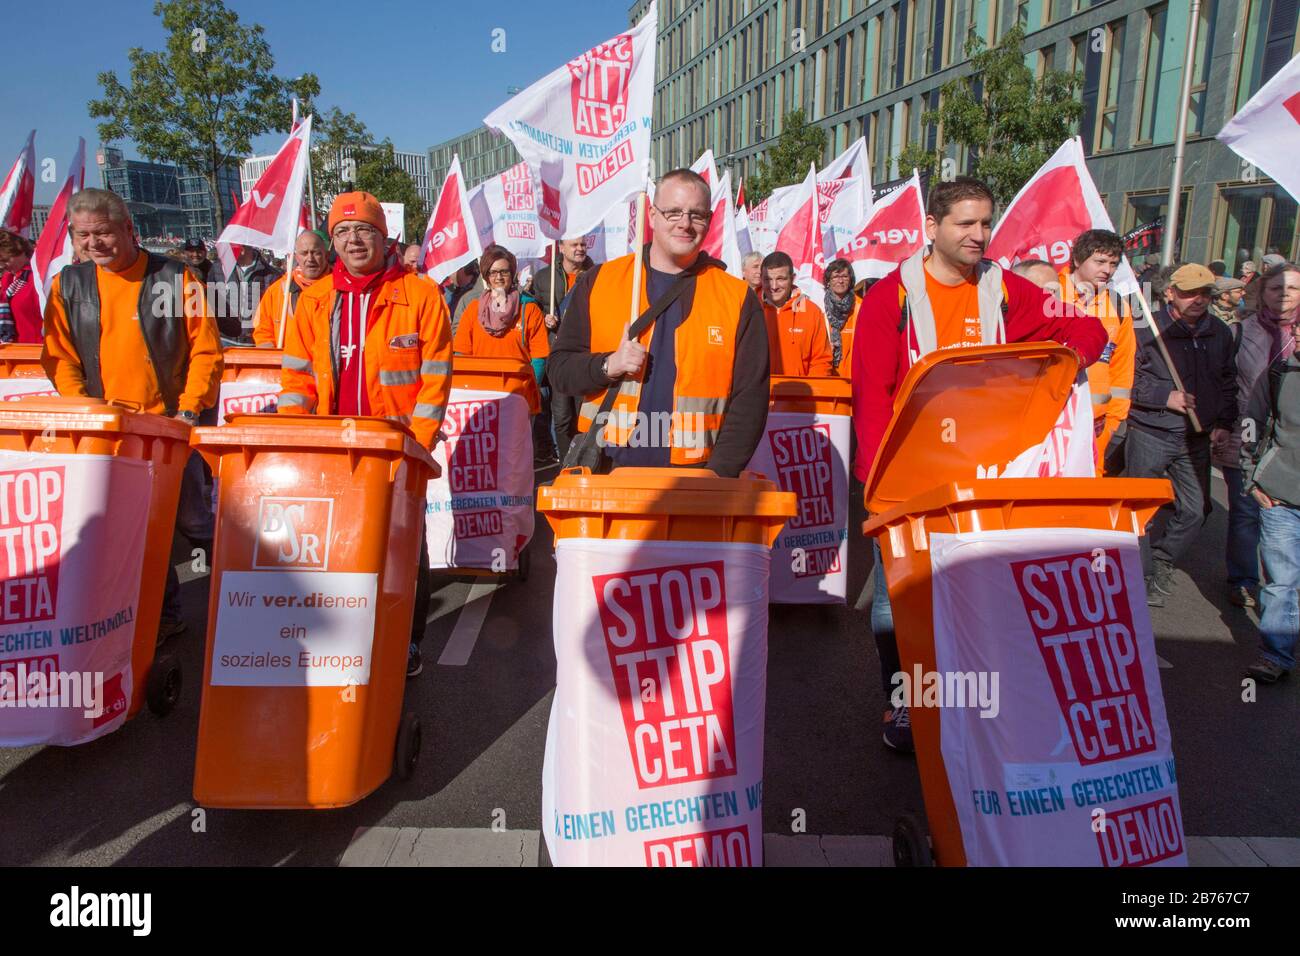 Les syndicalistes de verdi manifestent le 10.10.15 à Berlin contre l'accord de libre-échange TTIP. Le syndicat craint qu'un accord sur le TTIP ne conduirait à une plus grande privatisation des biens et services publics. [traduction automatique] Banque D'Images